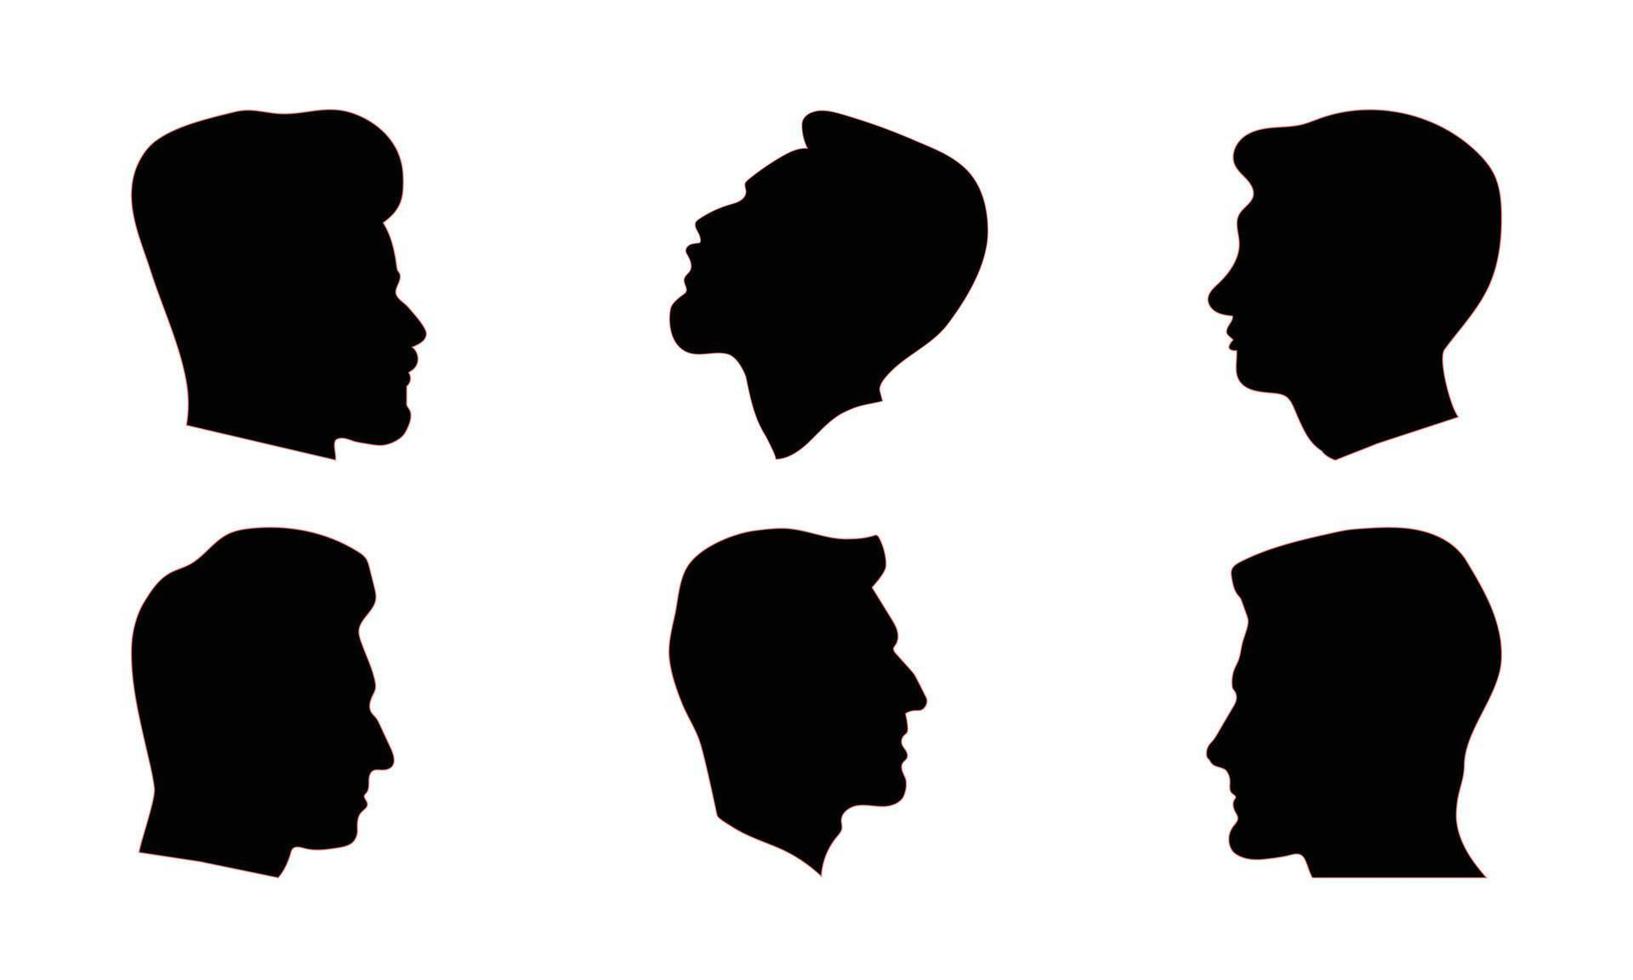 silhouette uomo teste nel profilo. nero viso schema avatar, professionale maschio profili anonimo ritratti con acconciatura, vettore impostato